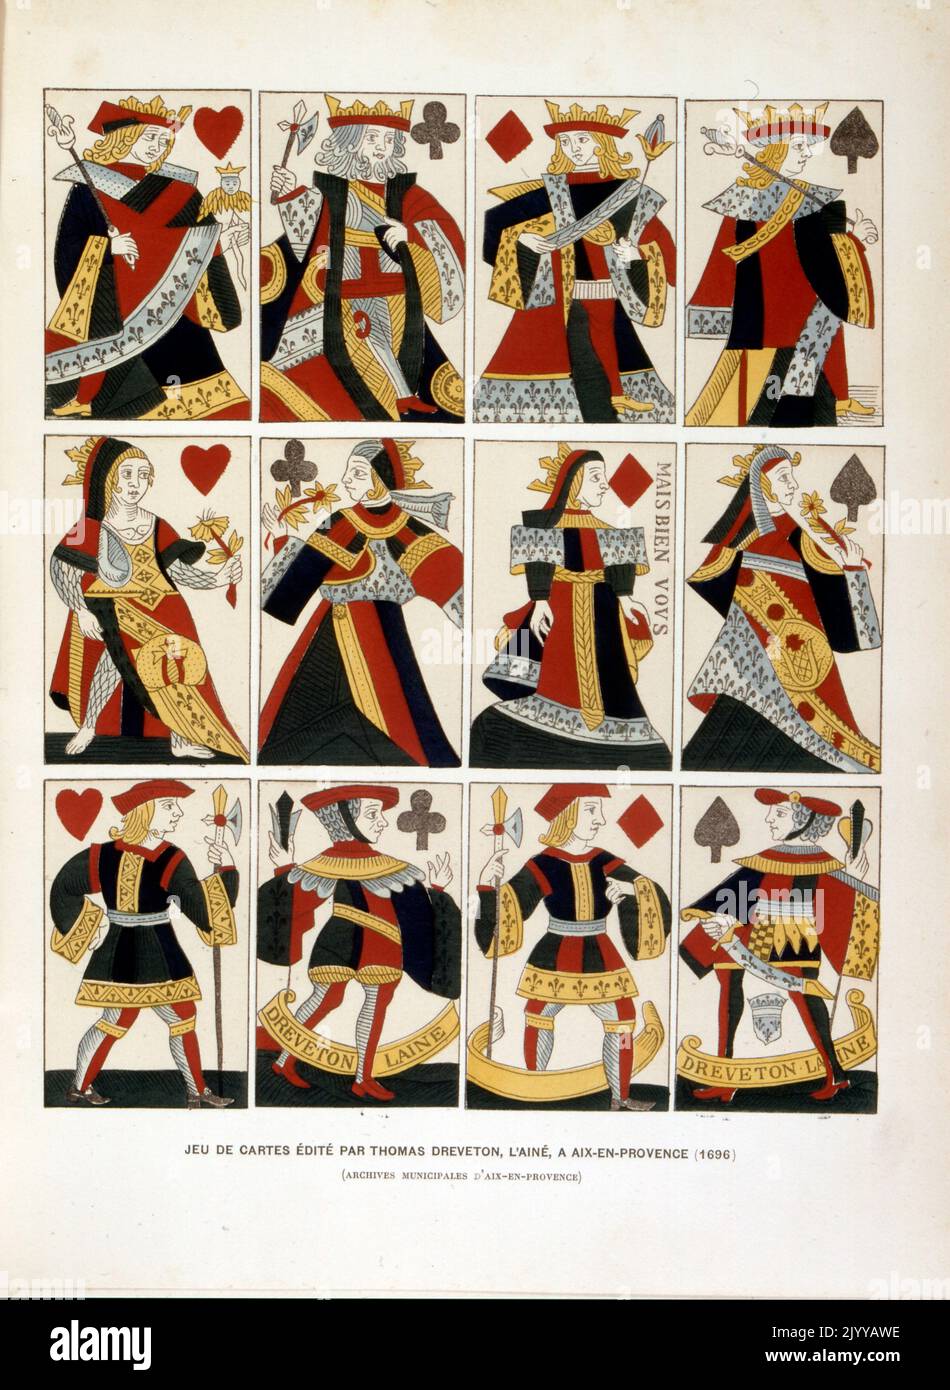 Illustration colorée d'un paquet de cartes à jouer édité par Thomas Dreveston l'aîné à Aix en Provence (1696). Banque D'Images